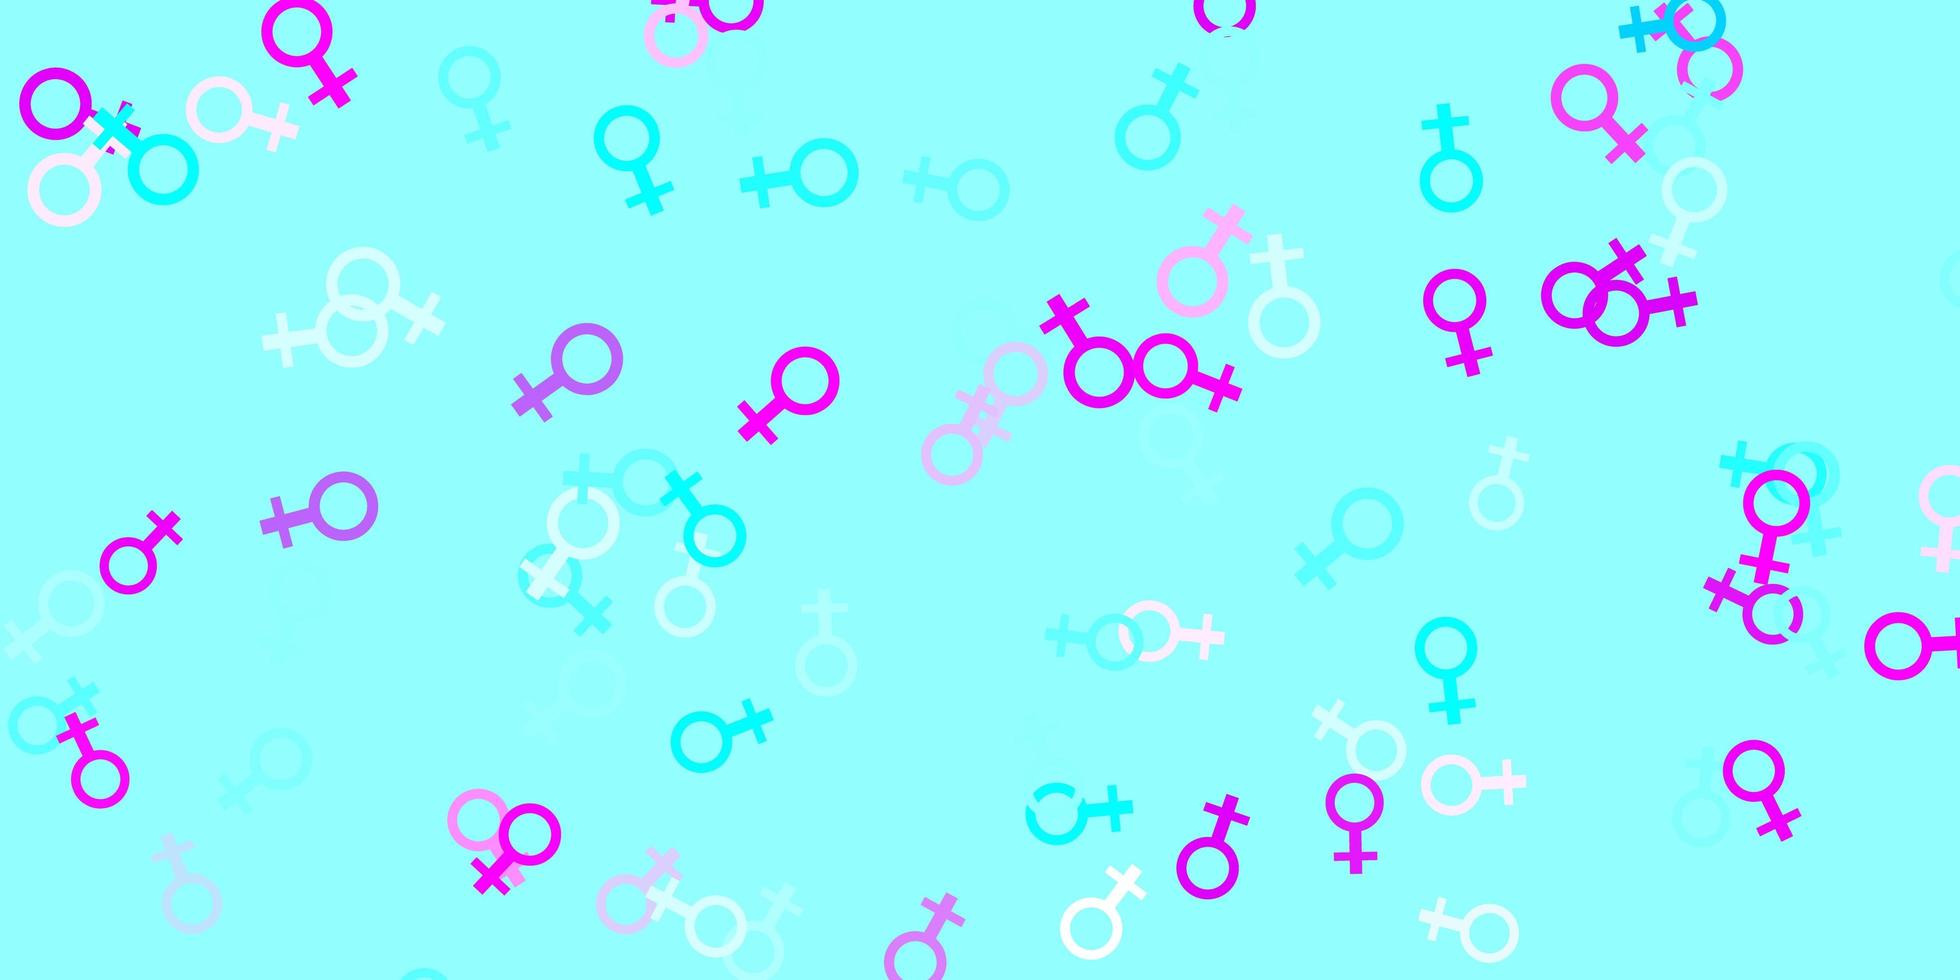 ljusrosa, blå vektorstruktur med kvinnors rättigheter symboler. vektor